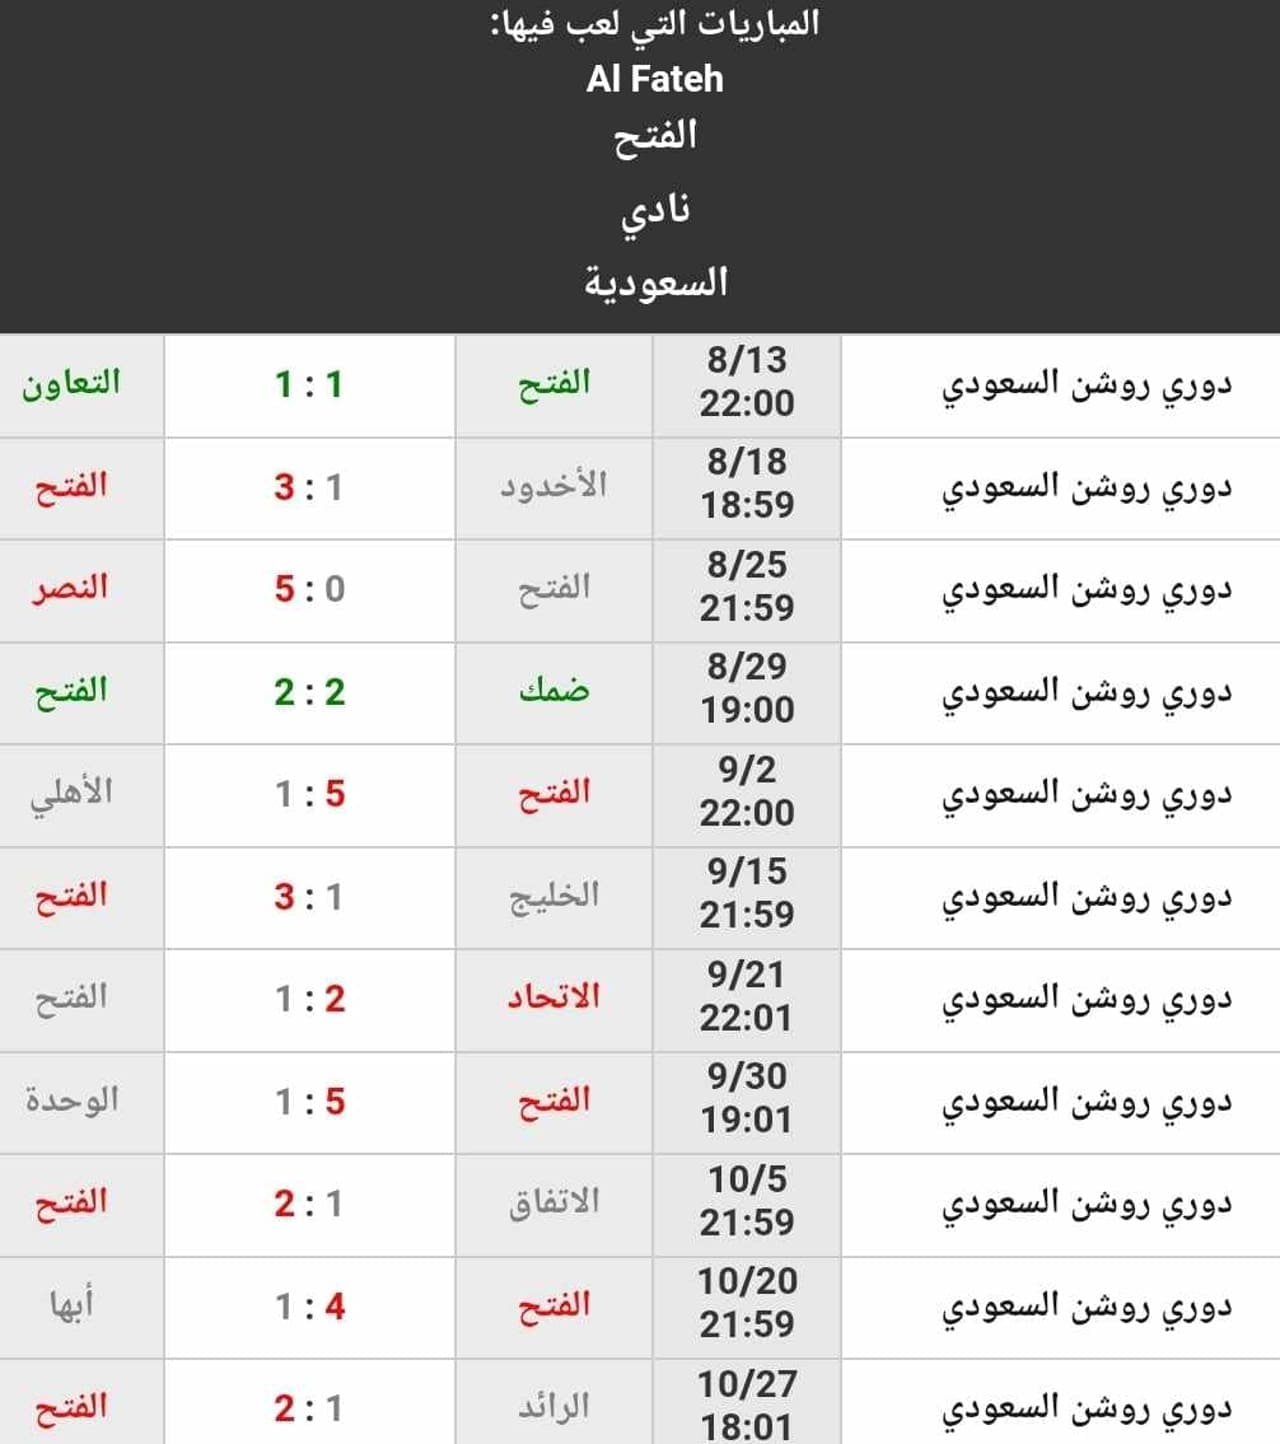 نتائج نادي الفتح حتى الجولة 11 من الدوري السعودي (المصدر. موقع كووورة)